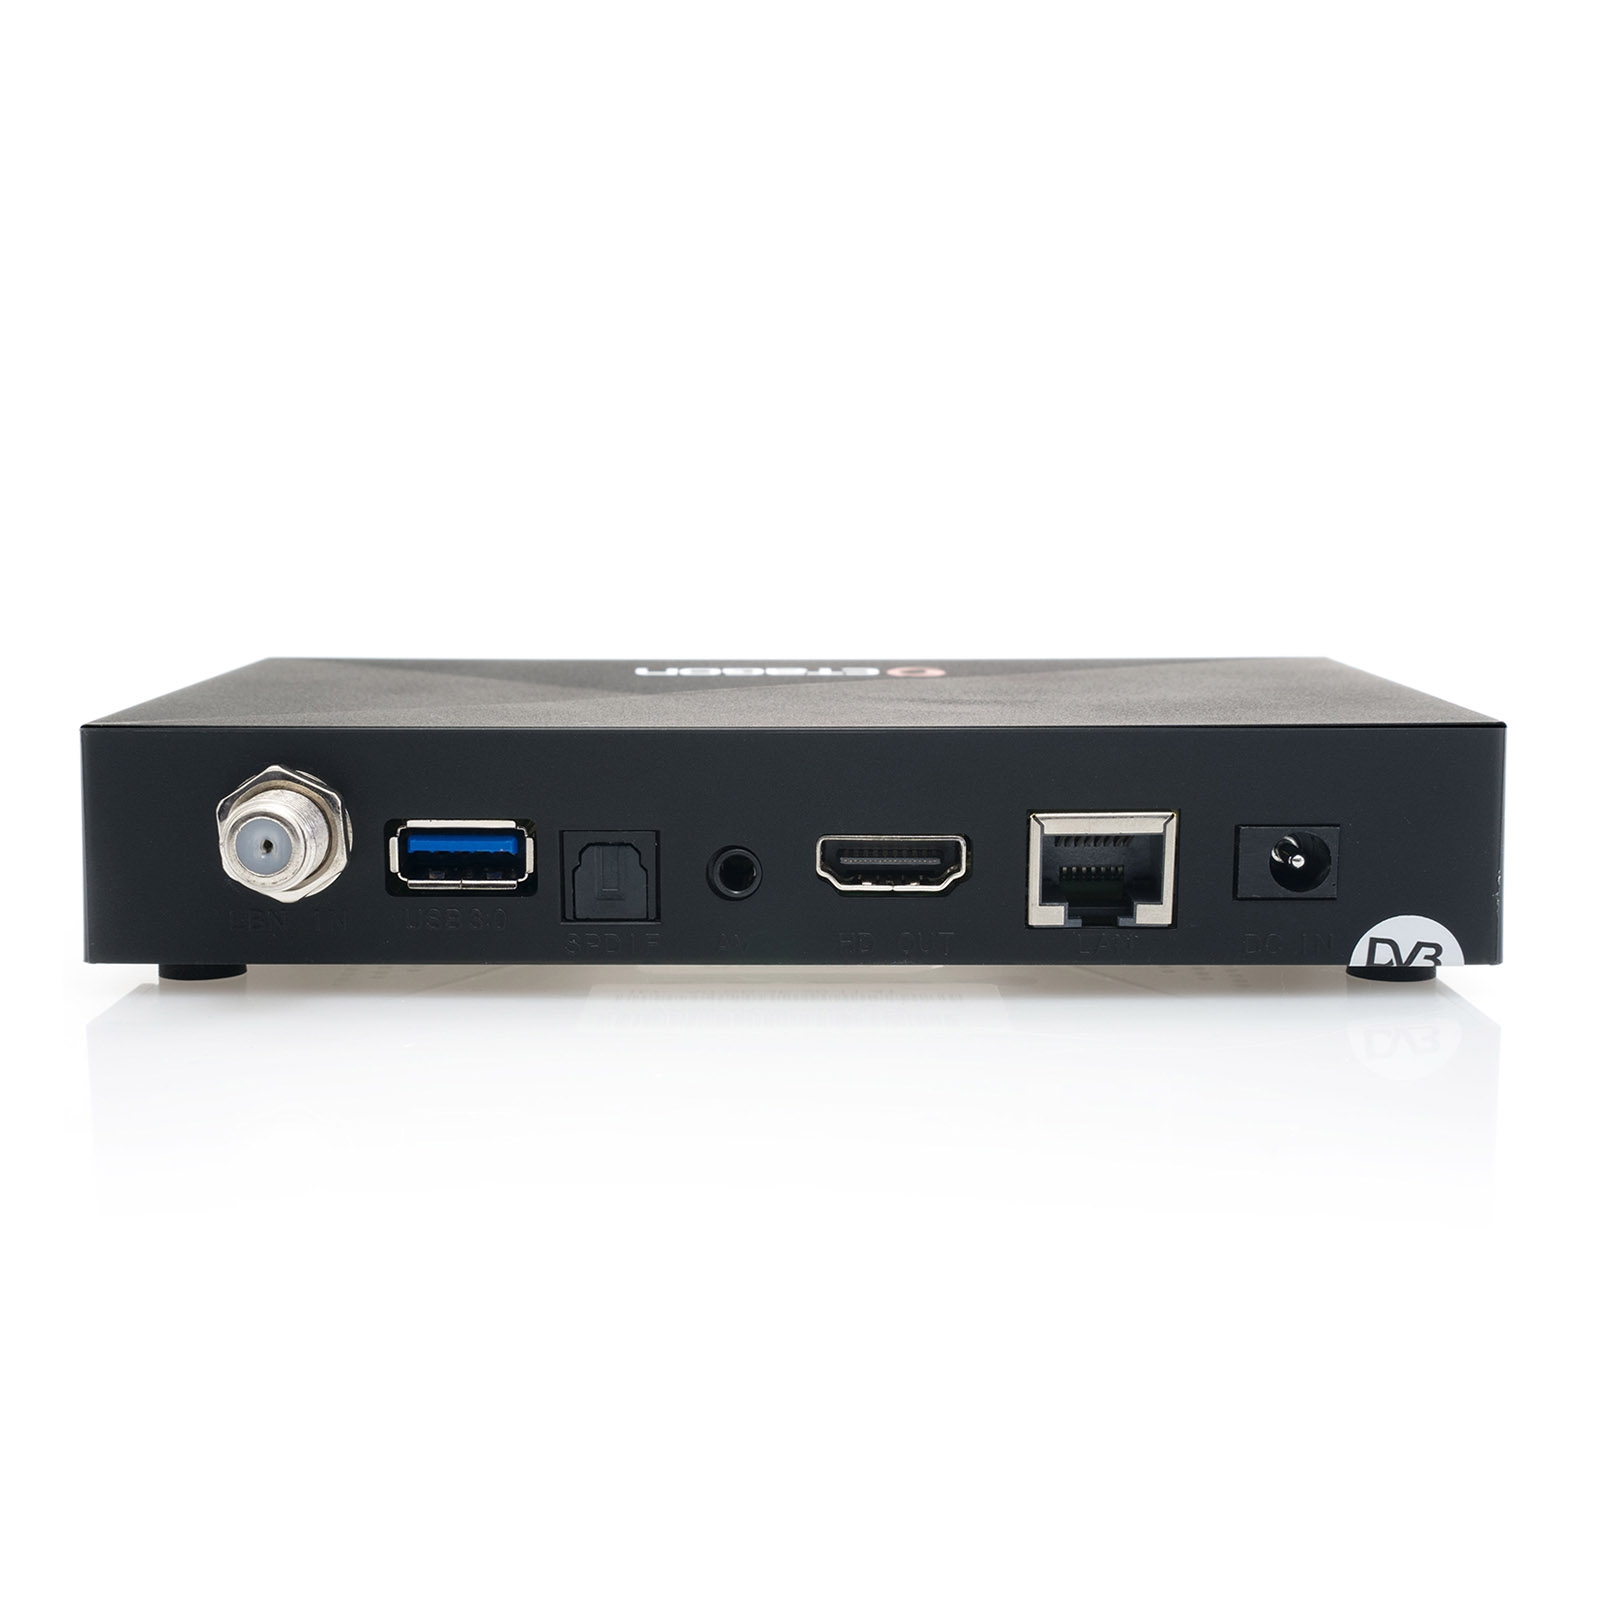 OCTAGON SX88 4K UHD S2+IP HDMI USB Kartenleser H.265 Stalker IPTV Multistream Receiver Schwarz